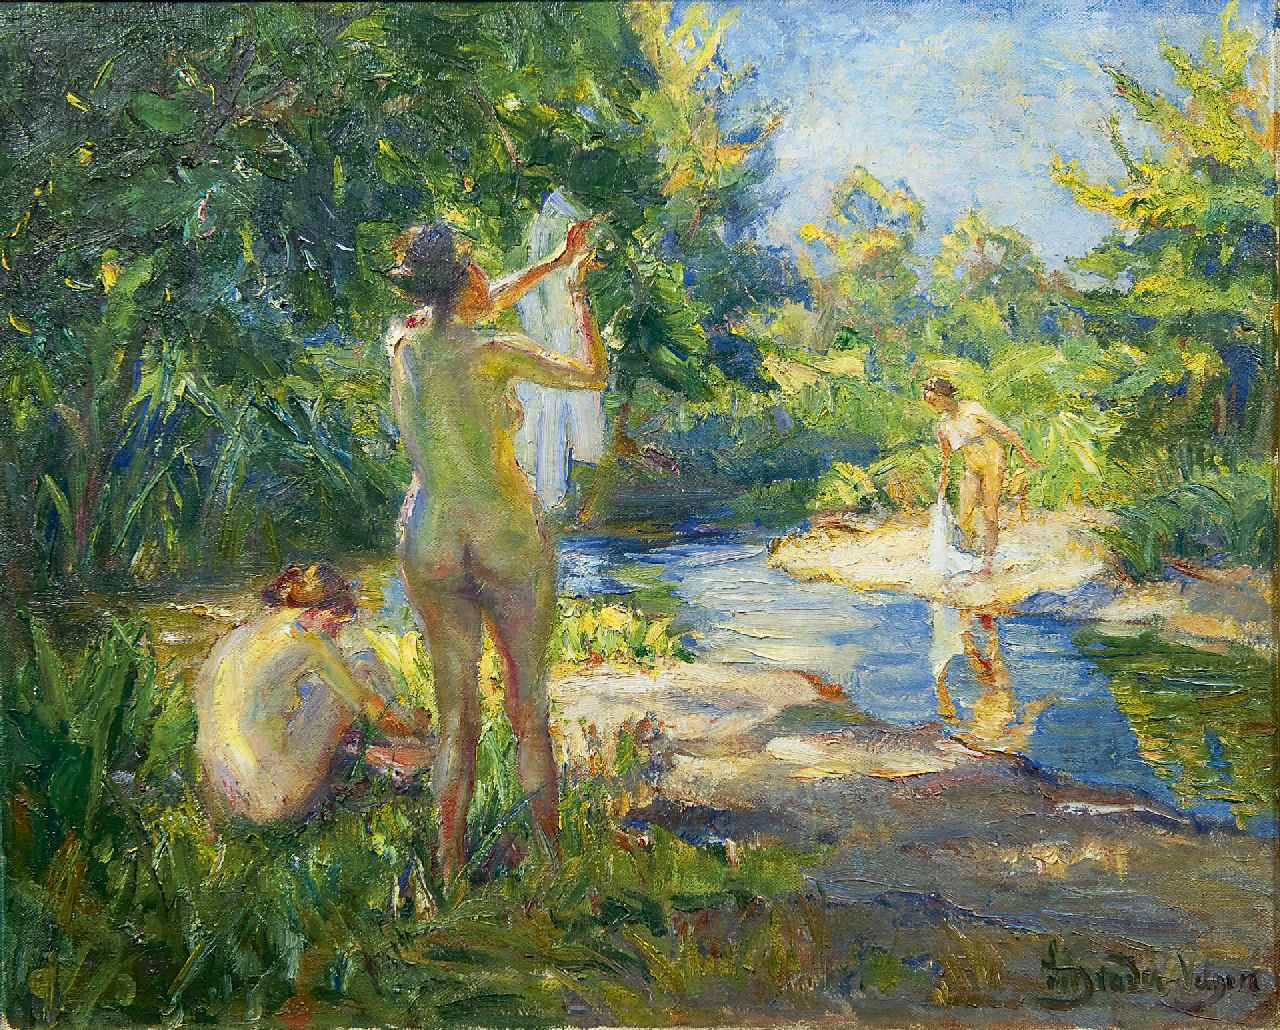 Schrader-Velgen C.H.  | Carl Hans Schrader-Velgen, Three bathing women, oil on canvas 65.4 x 79.9 cm, signed l.r.